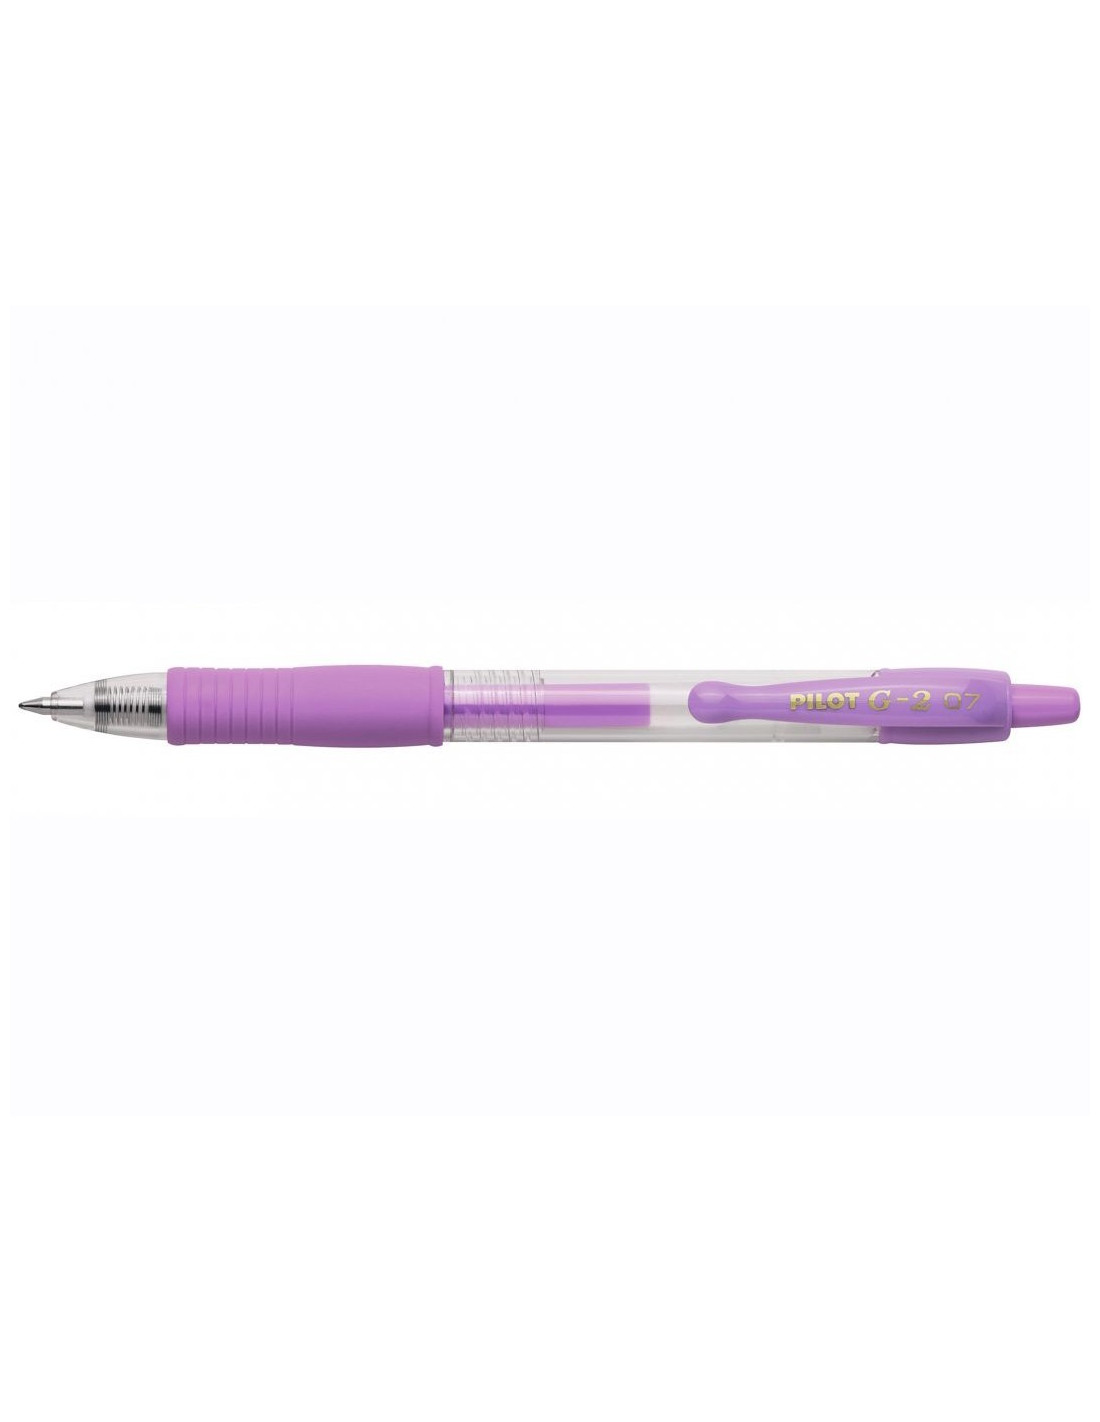 https://papeterie-makkura.fr/19834-home_default/stylo-roller-g-2-pastel-violet-pilot.jpg